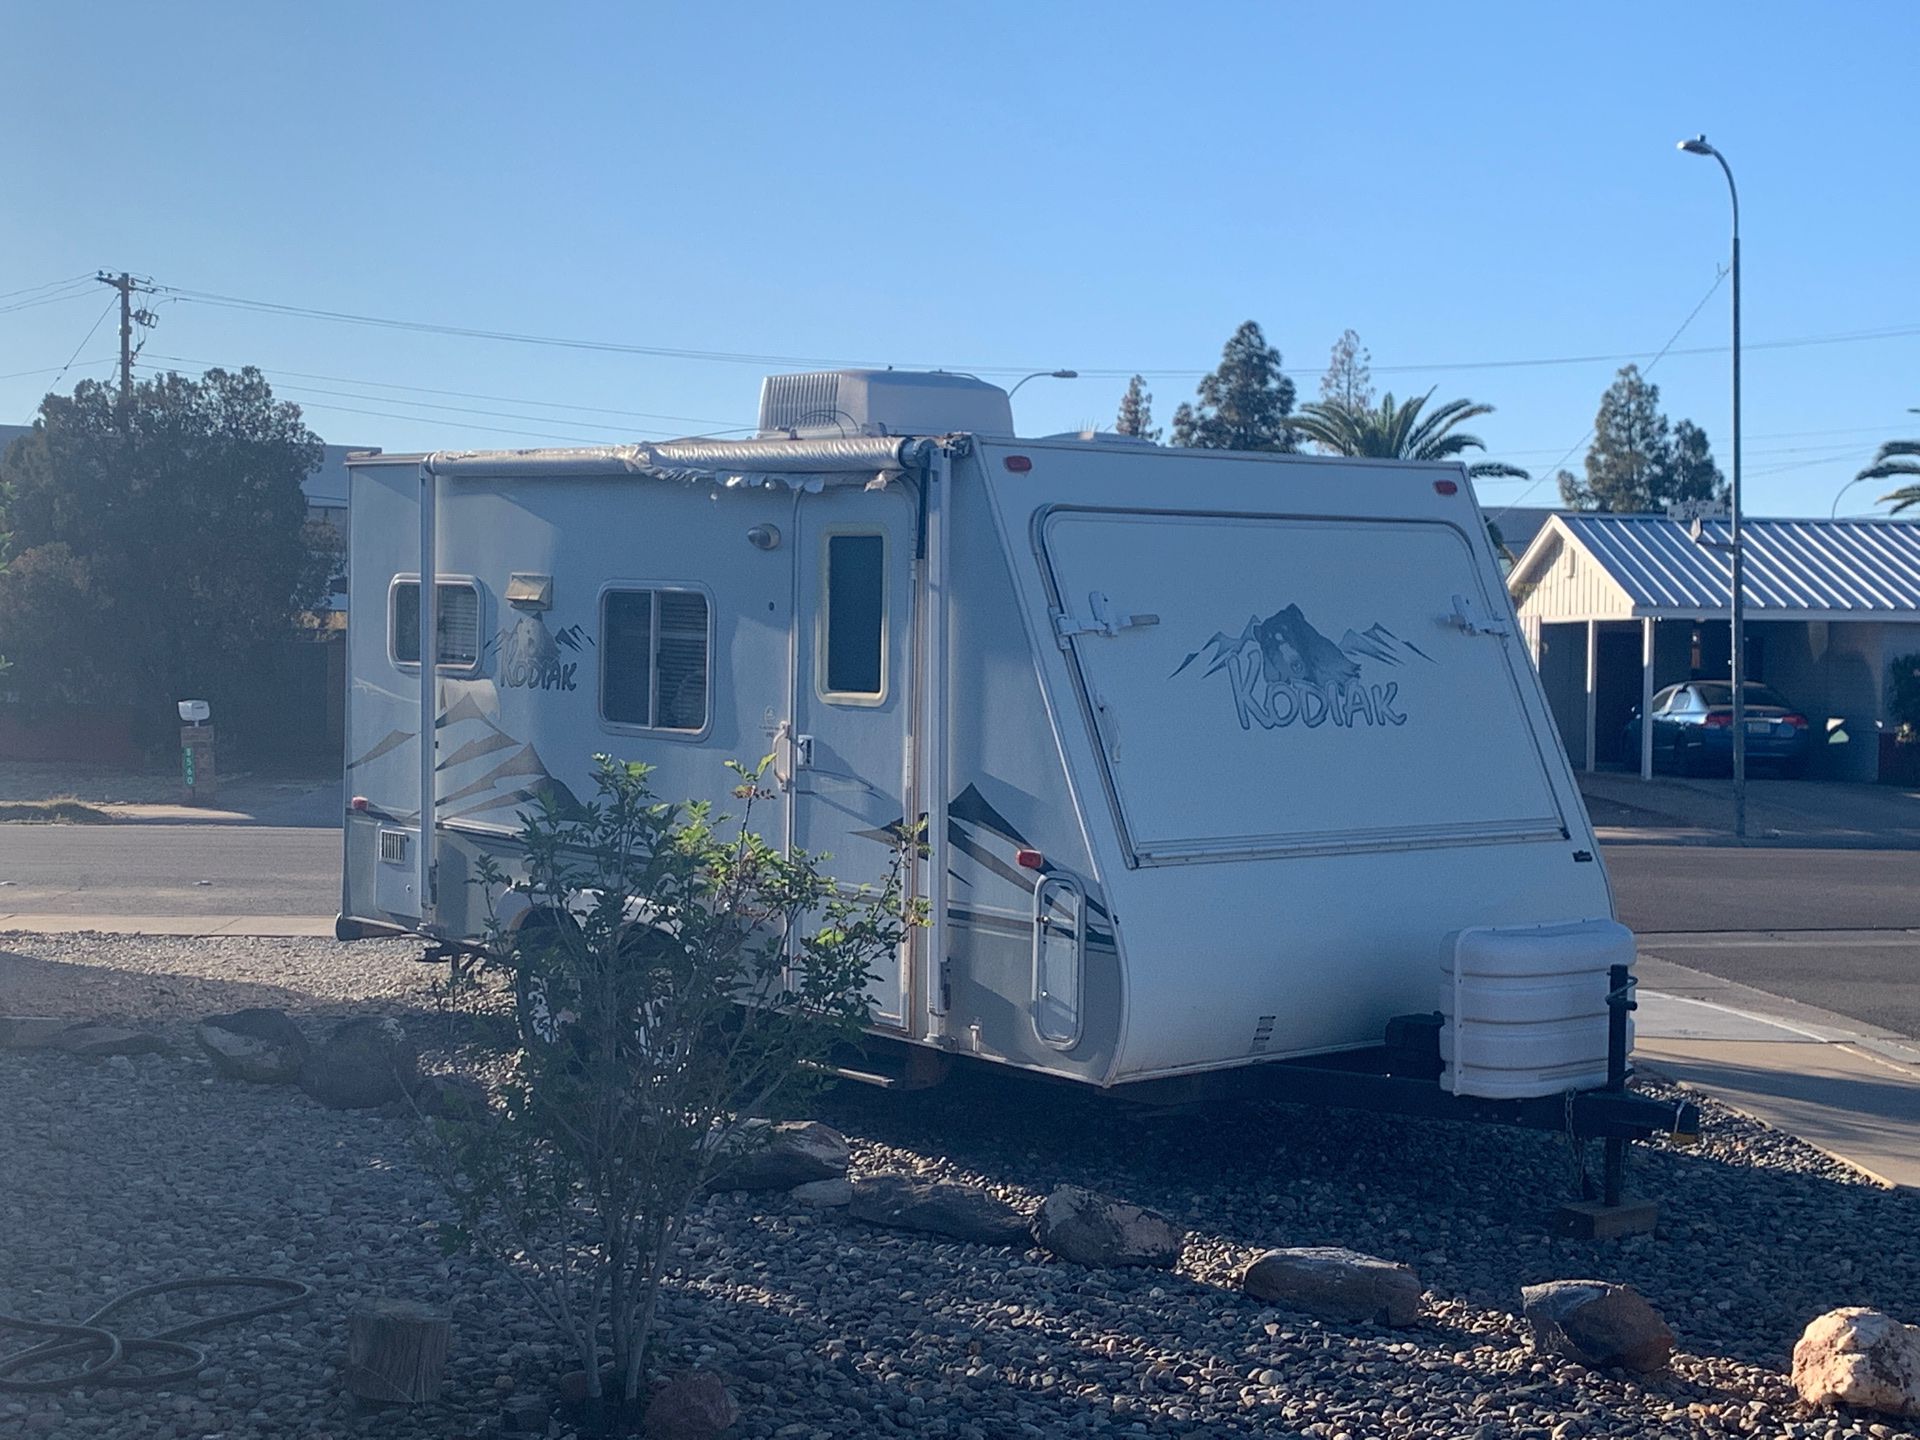 Kodiak camper trailer